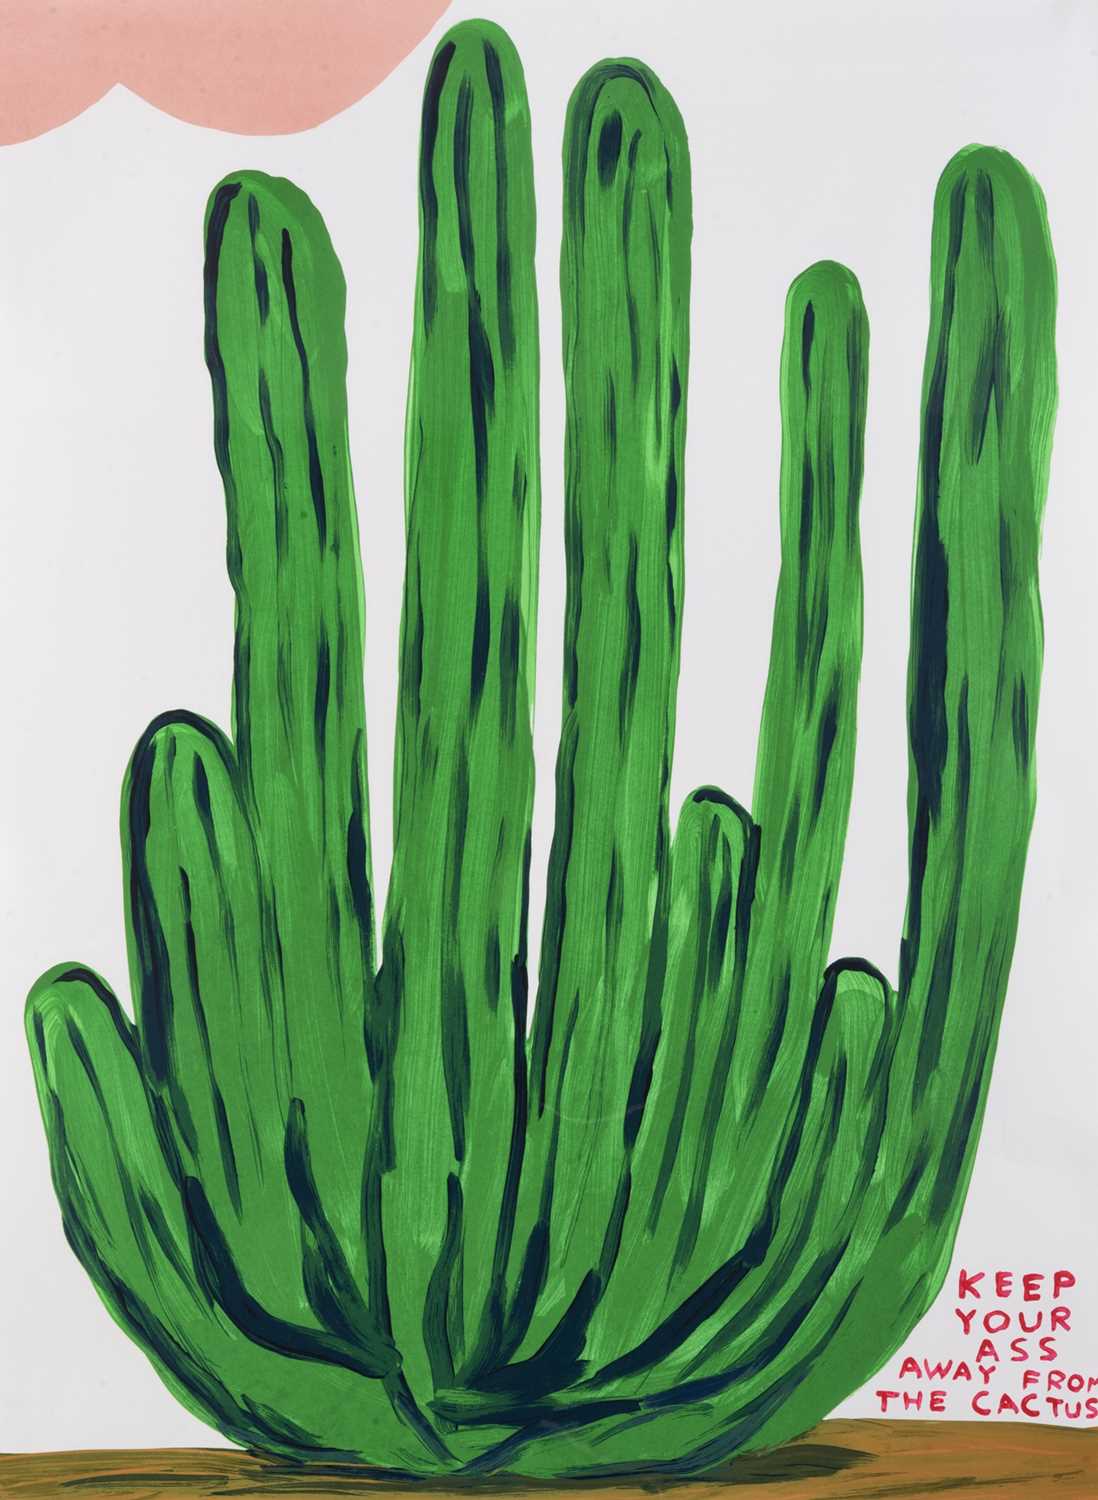 Lot 254 - David Shrigley (British 1968-), 'Keep Your Ass Away From The Cactus', 2020